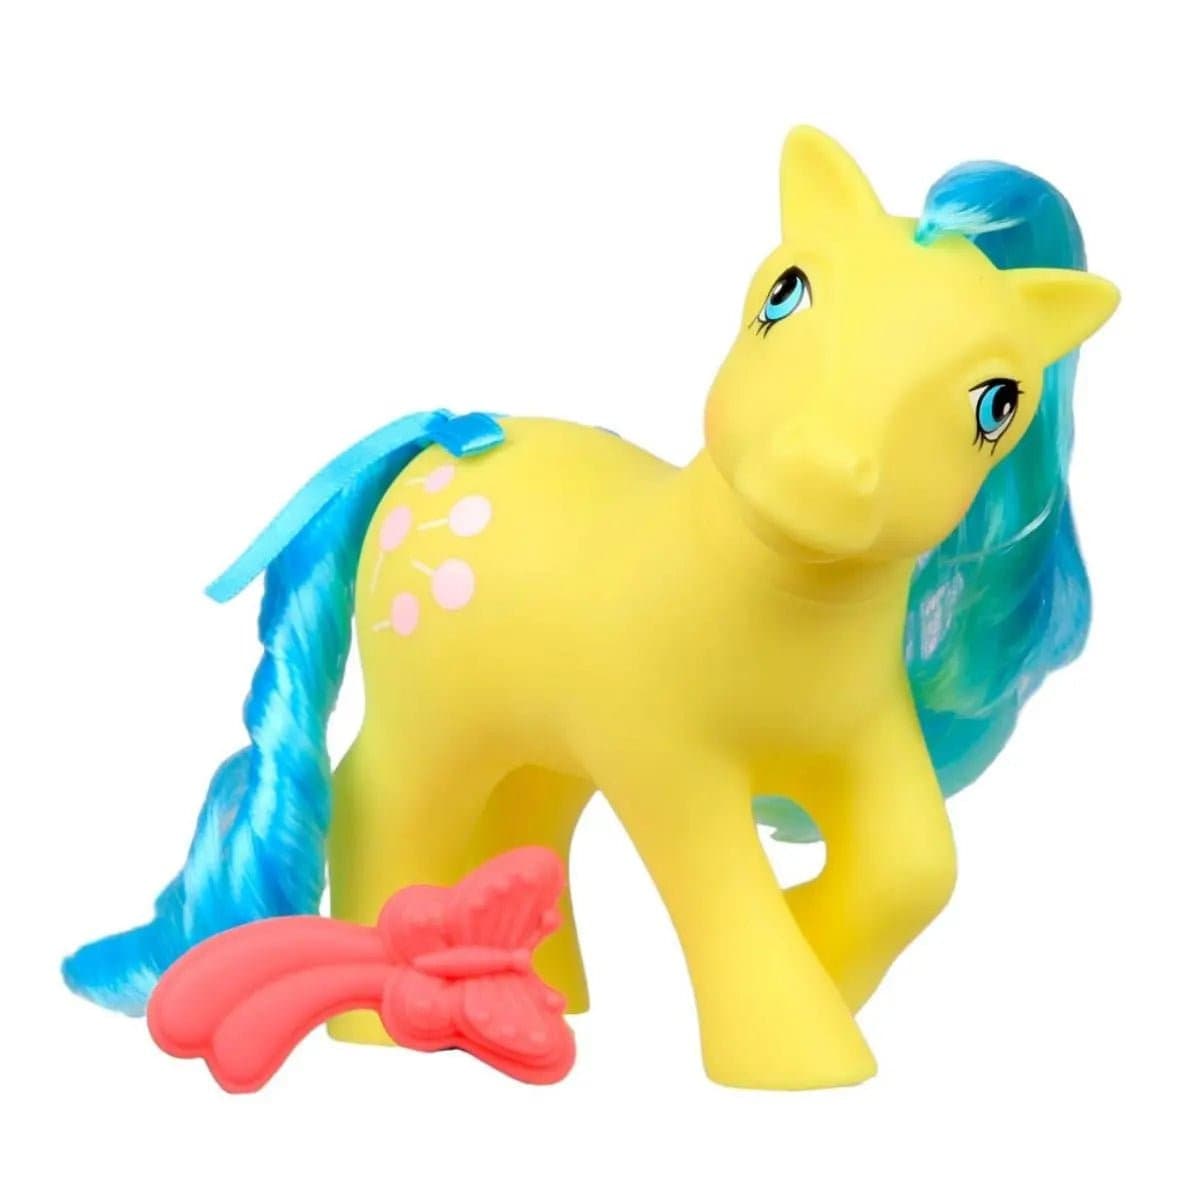 Retro My Little Pony Classic Pony Wave 4 - TOOTSIE - Simon's Collectibles